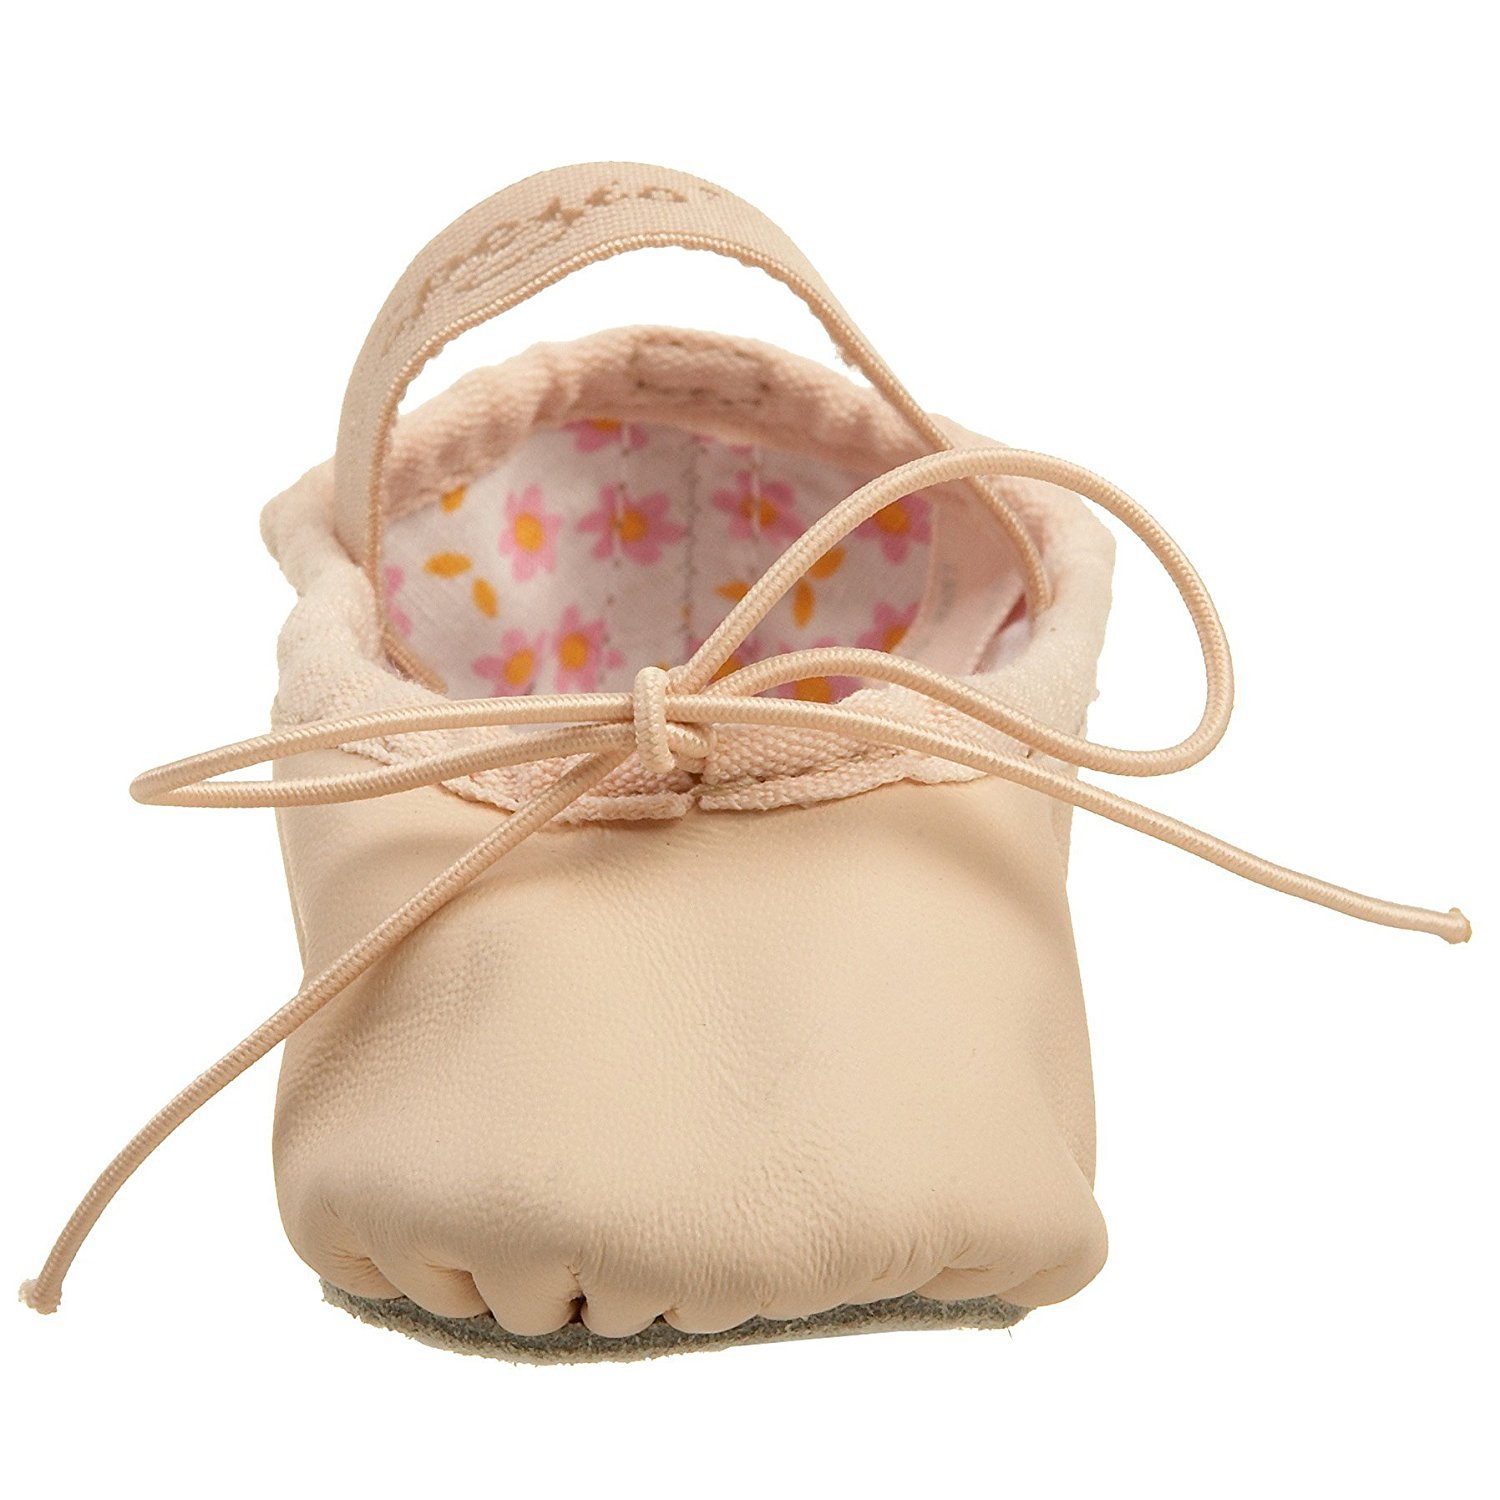 Capezio Daisy Ballet Shoe Ballet Pink,5 M